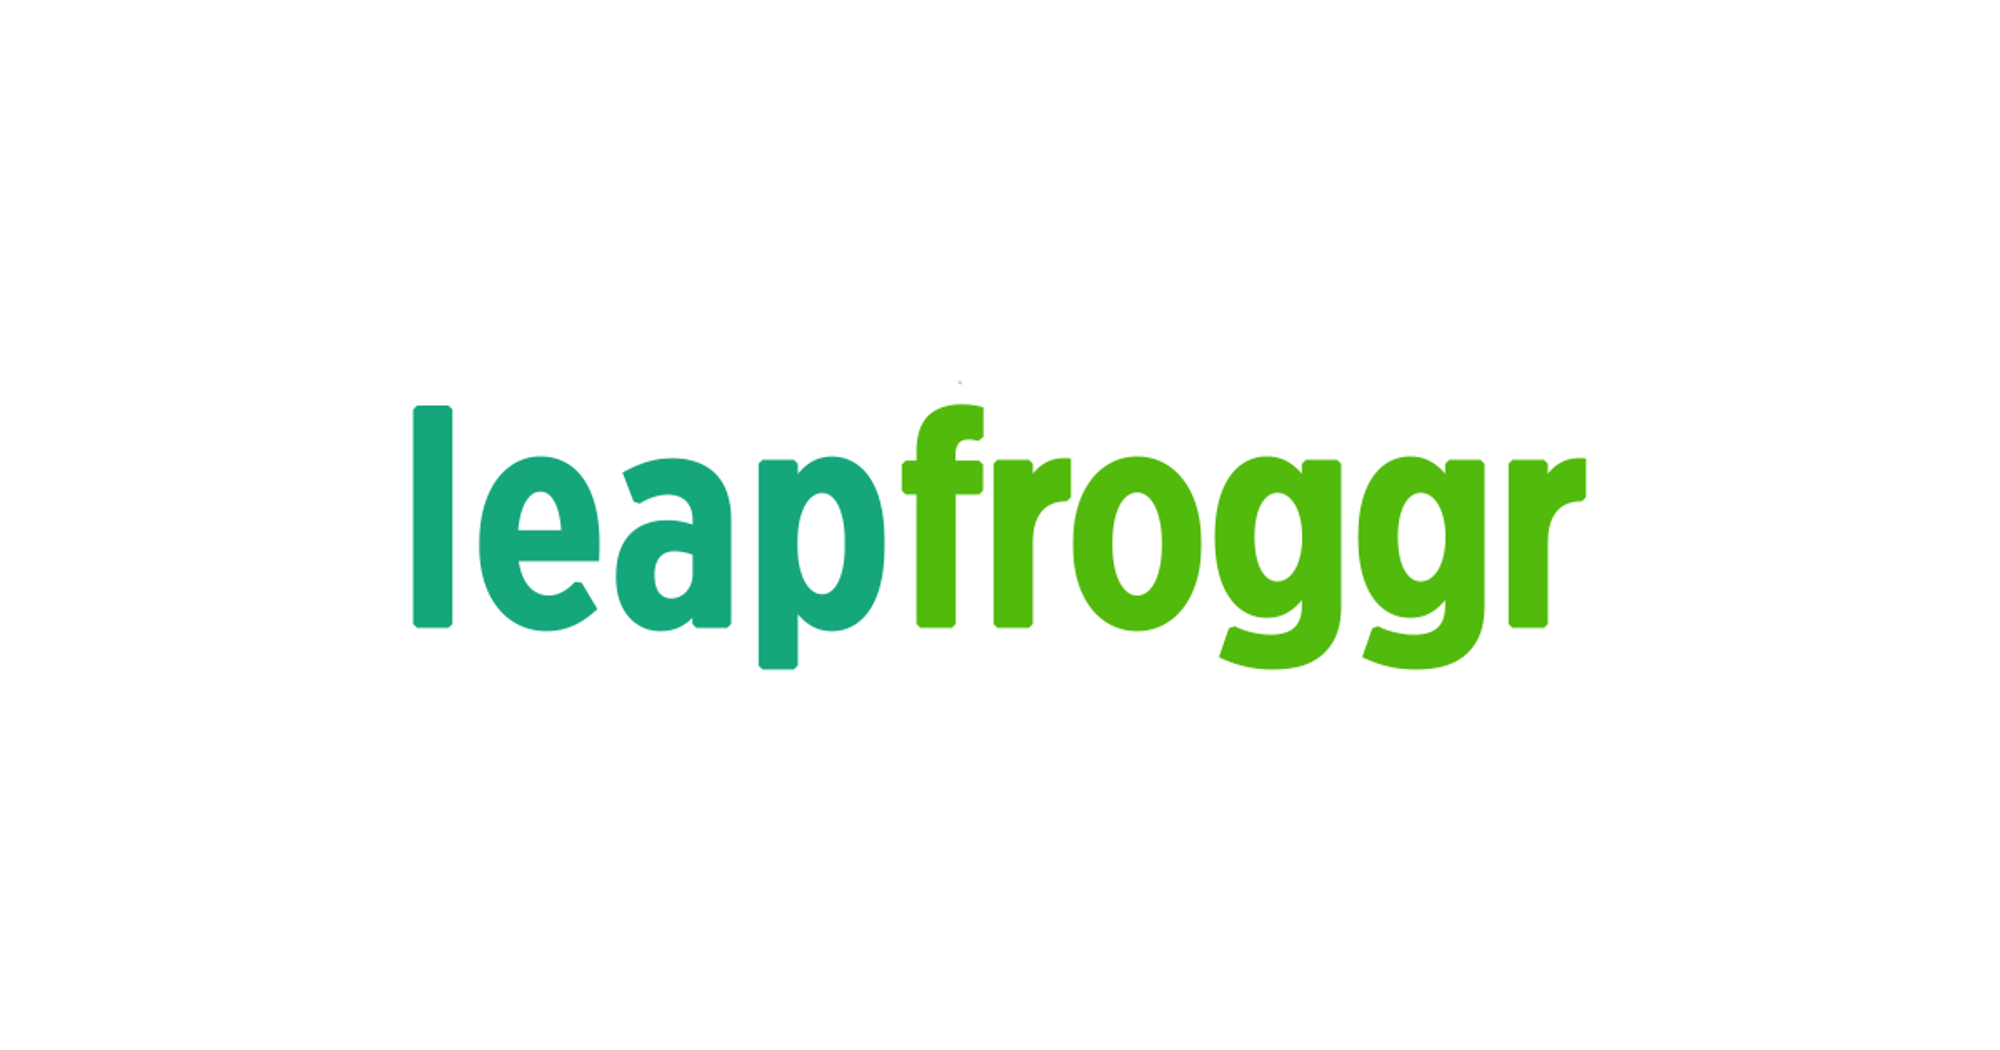 Android Developer at LeapFroggr Inc.